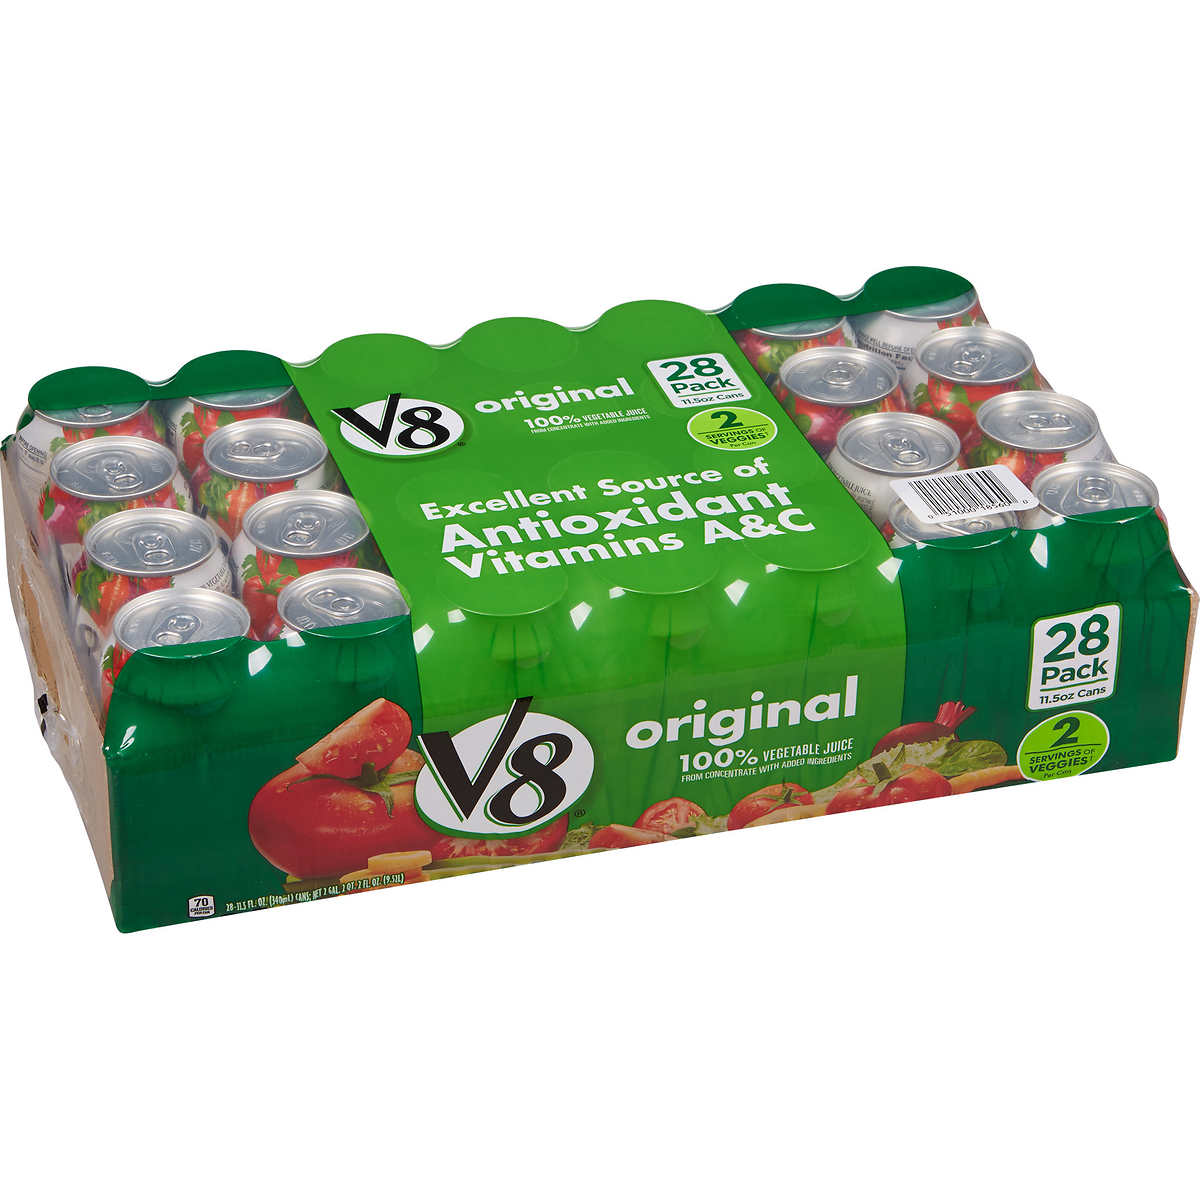 V8 Original Vegetable Juice, 11.5 fl oz, 28-count